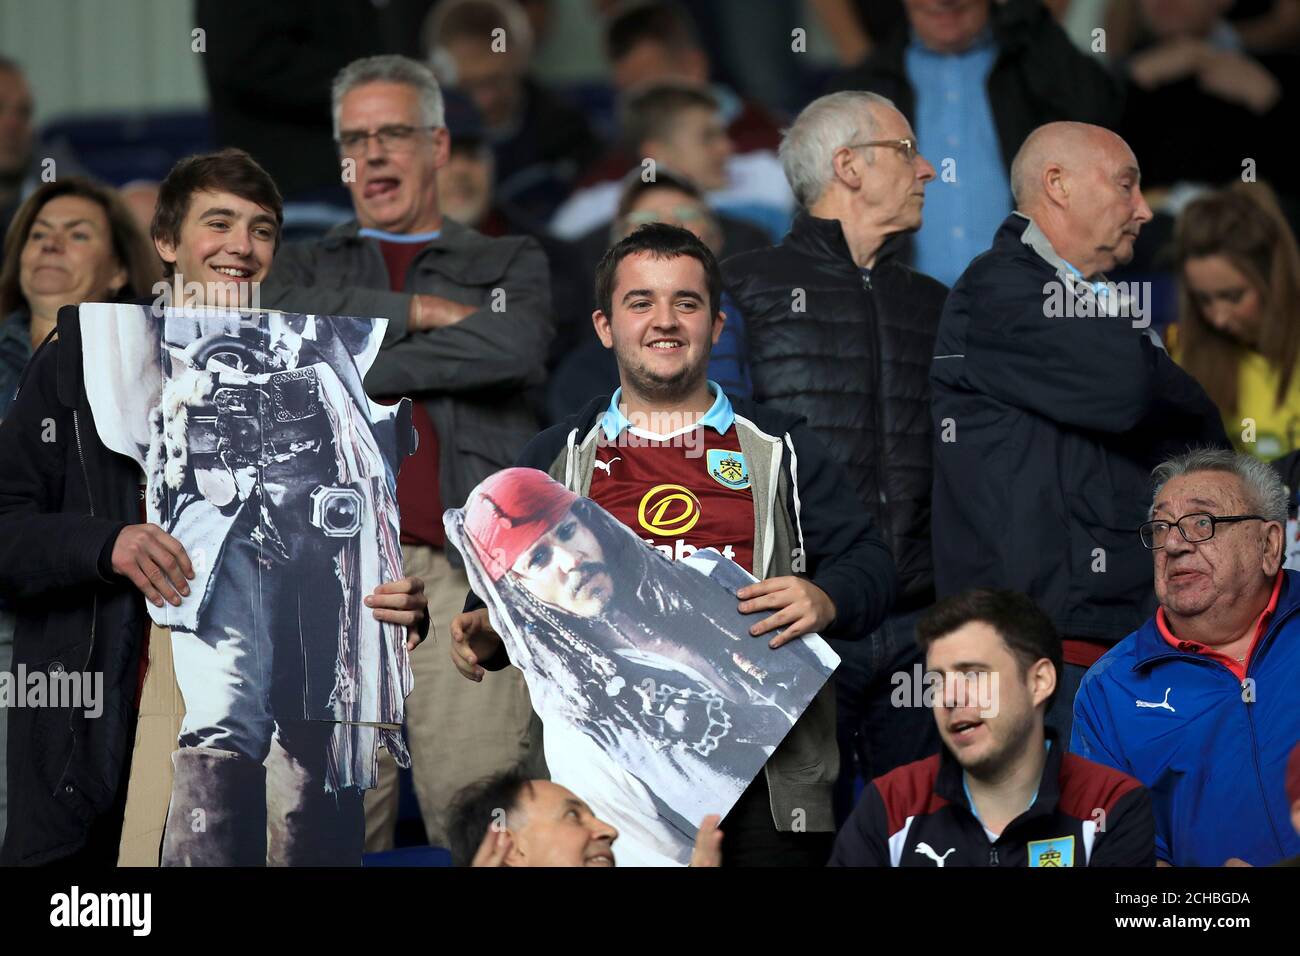 Burnley-Fans halten Ausschnitte aus Pappe von Captain Jack Sparrow In den Tribünen Stockfoto